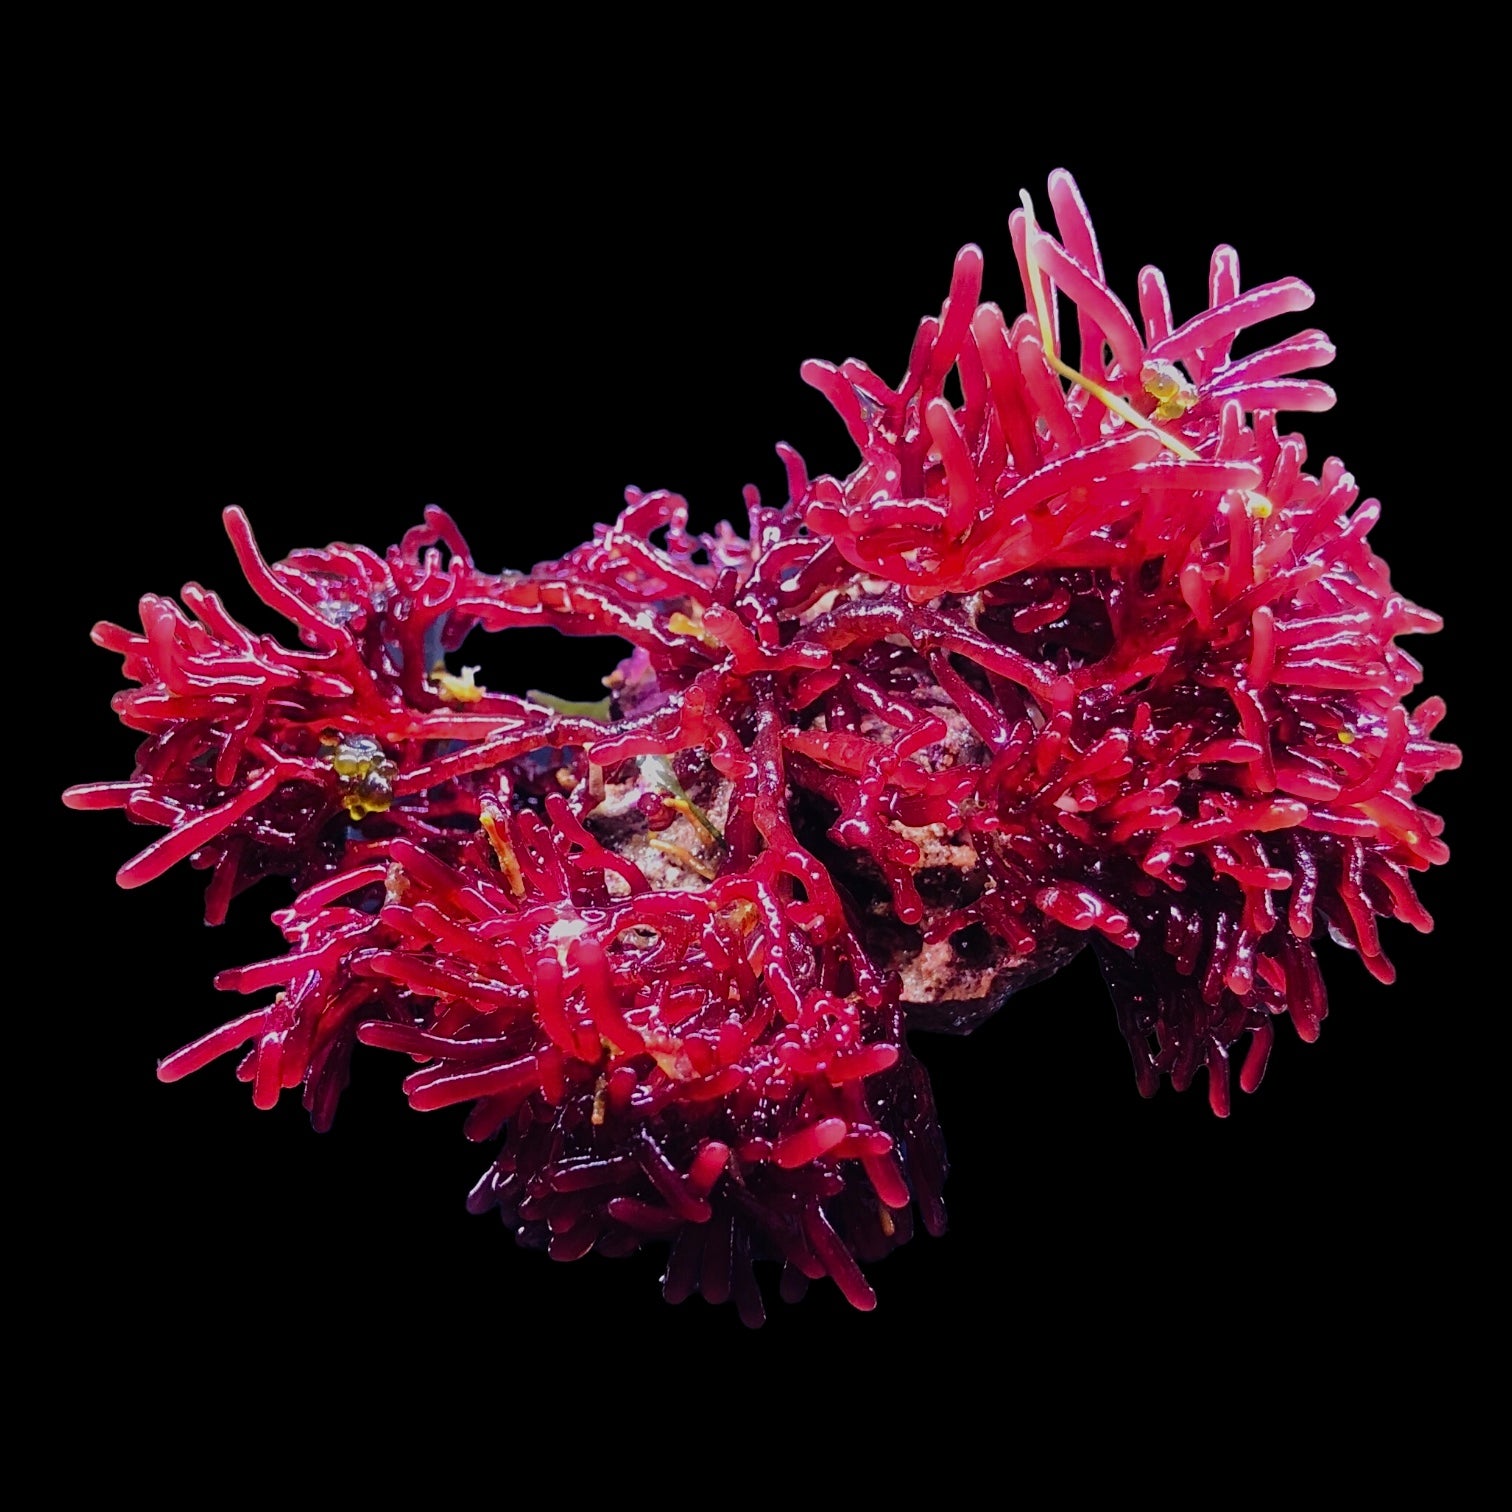 Red Rhodopeltis Macroalgae-Large Colony Cluster